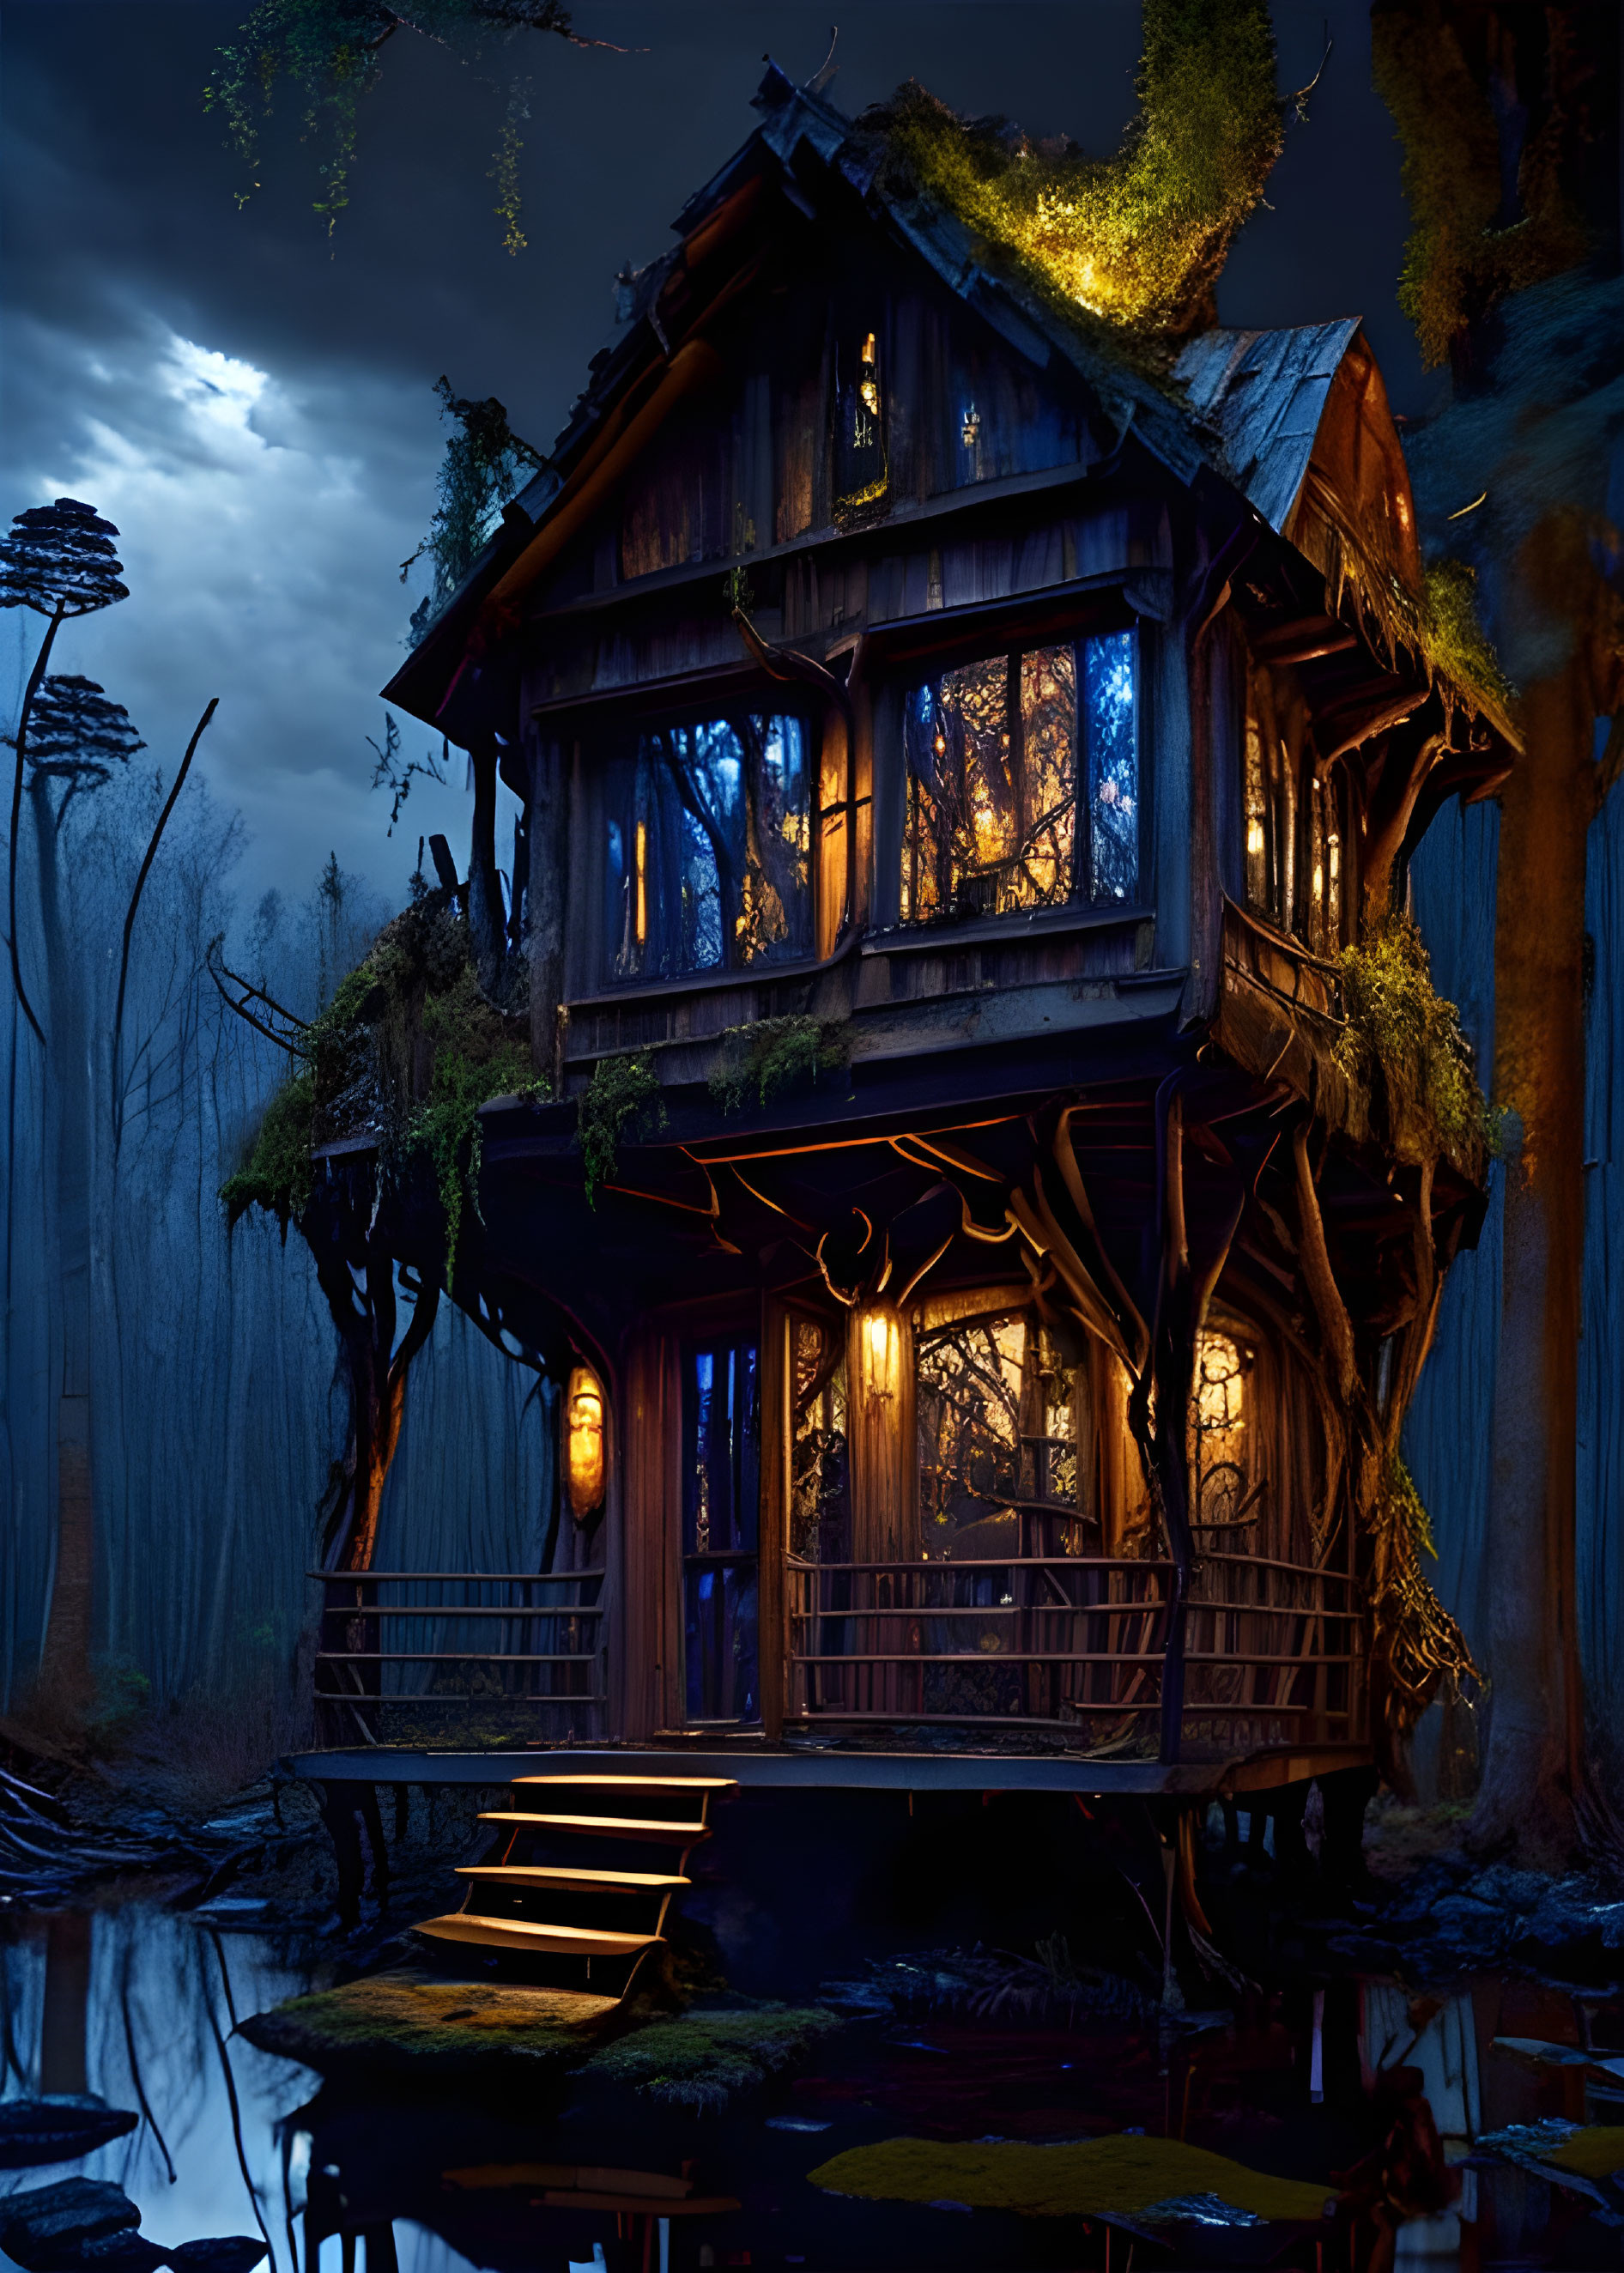 Magician's hut